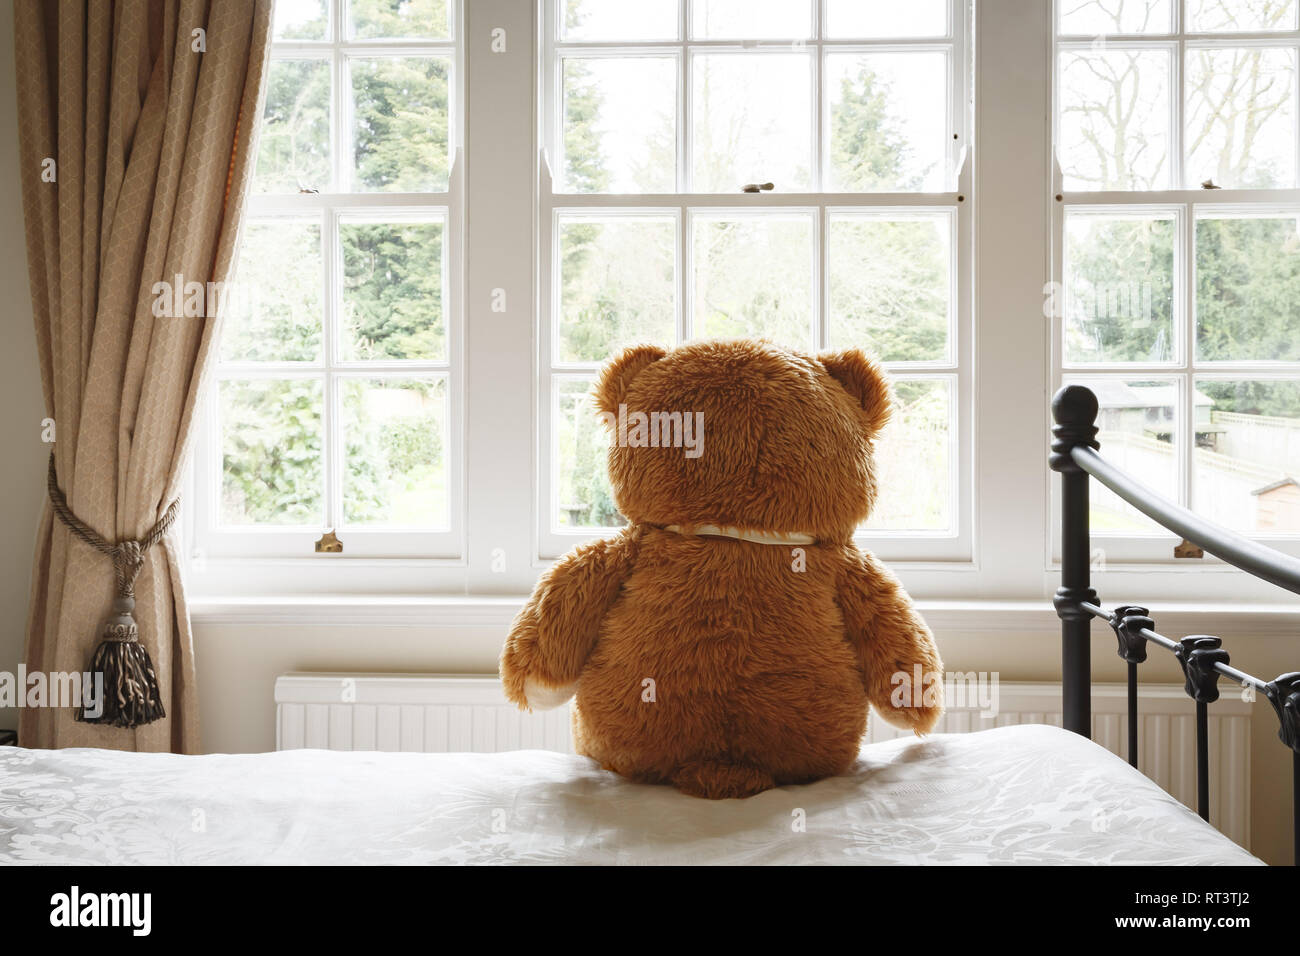 Teddy sitzt auf einem Bett durch ein Fenster. Sie zeigen die Einsamkeit, Depression oder Angst Stockfoto